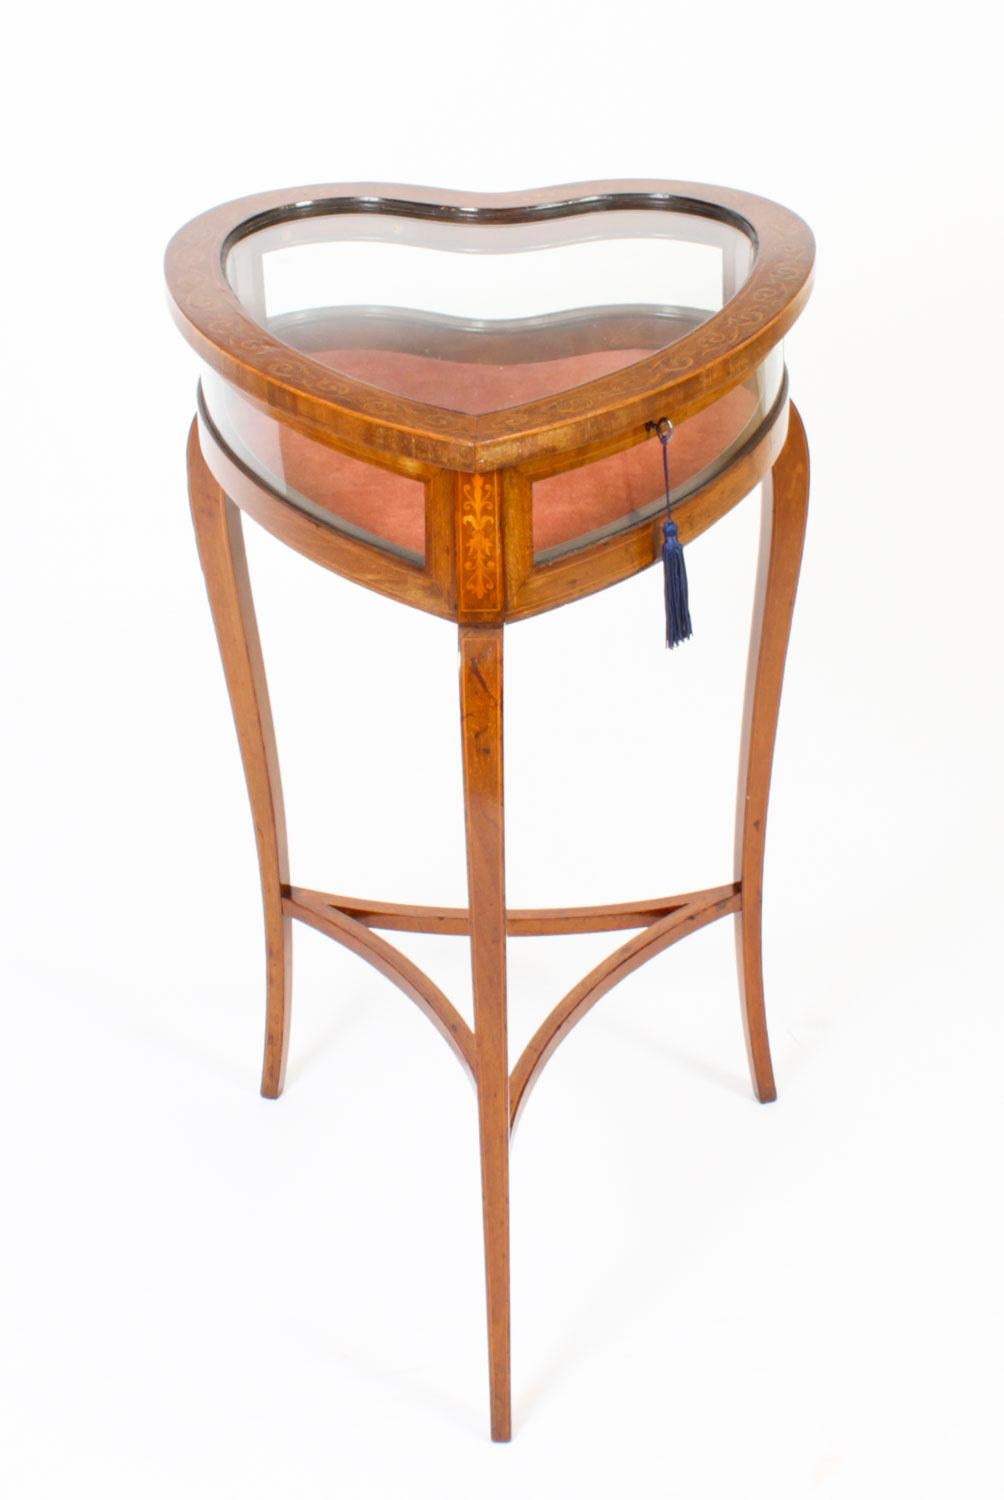 Il s'agit d'une table de bijouterie en forme de cœur, en acajou, de l'époque édouardienne, d'une qualité exquise et merveilleuse, datant d'environ 1890.
 
Cette table de bijouterie attrayante est dotée d'un superbe plateau émaillé, de côtés émaillés